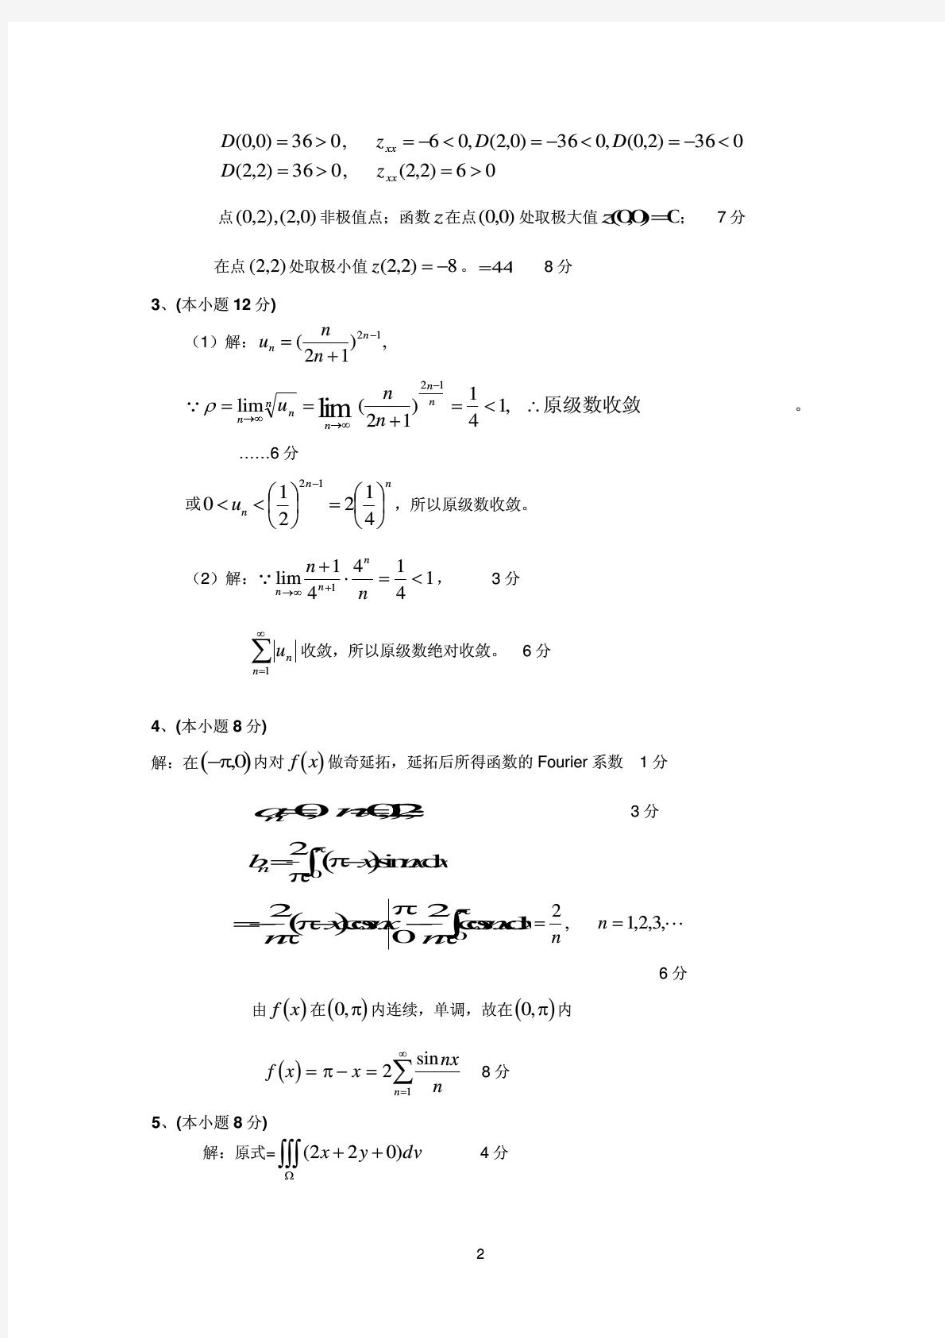 上海海事大学高等数学A(二)2009-2010(A)解答